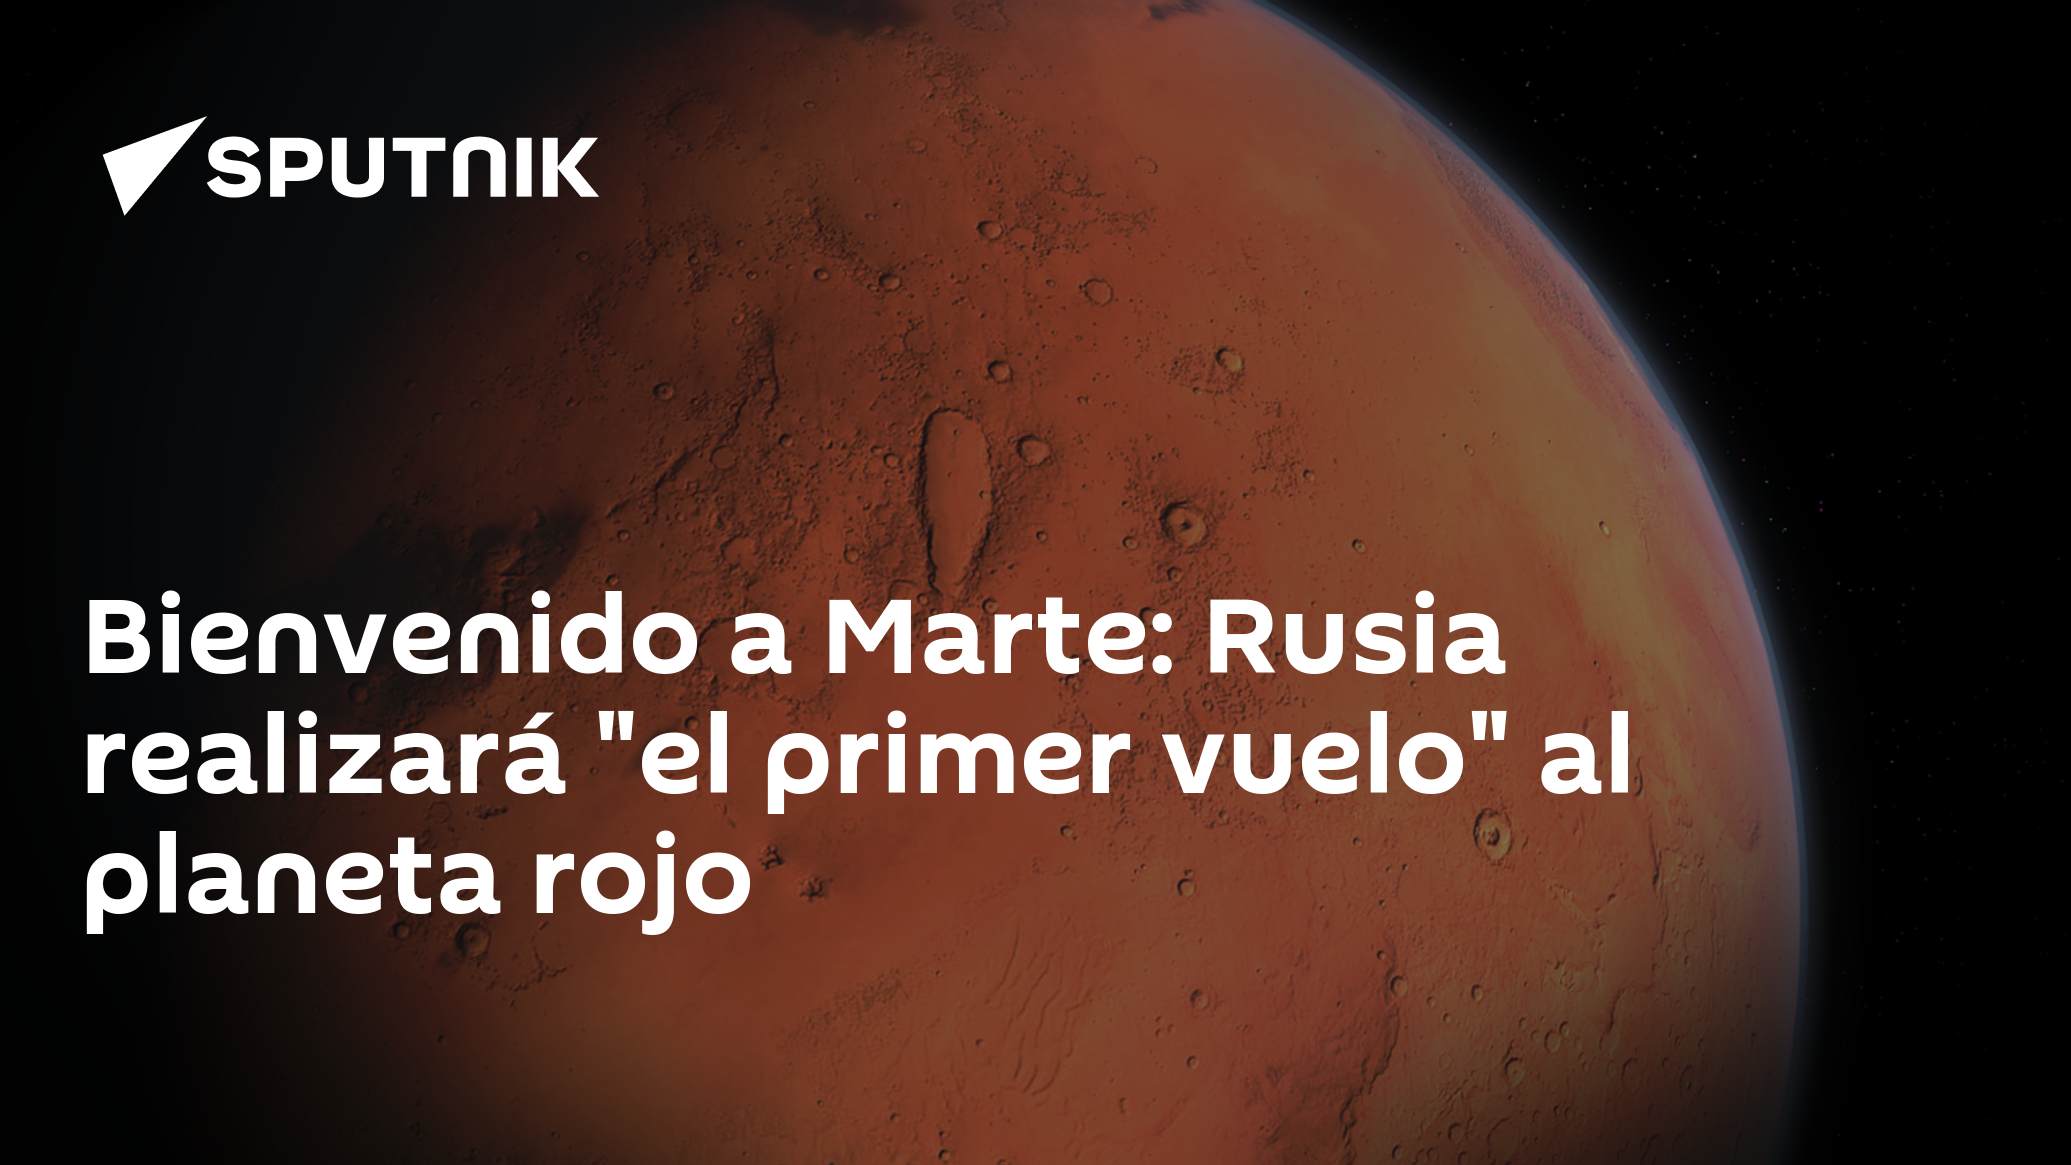 Bienvenido a Marte: Rusia realizará "el primer vuelo" al planeta rojo